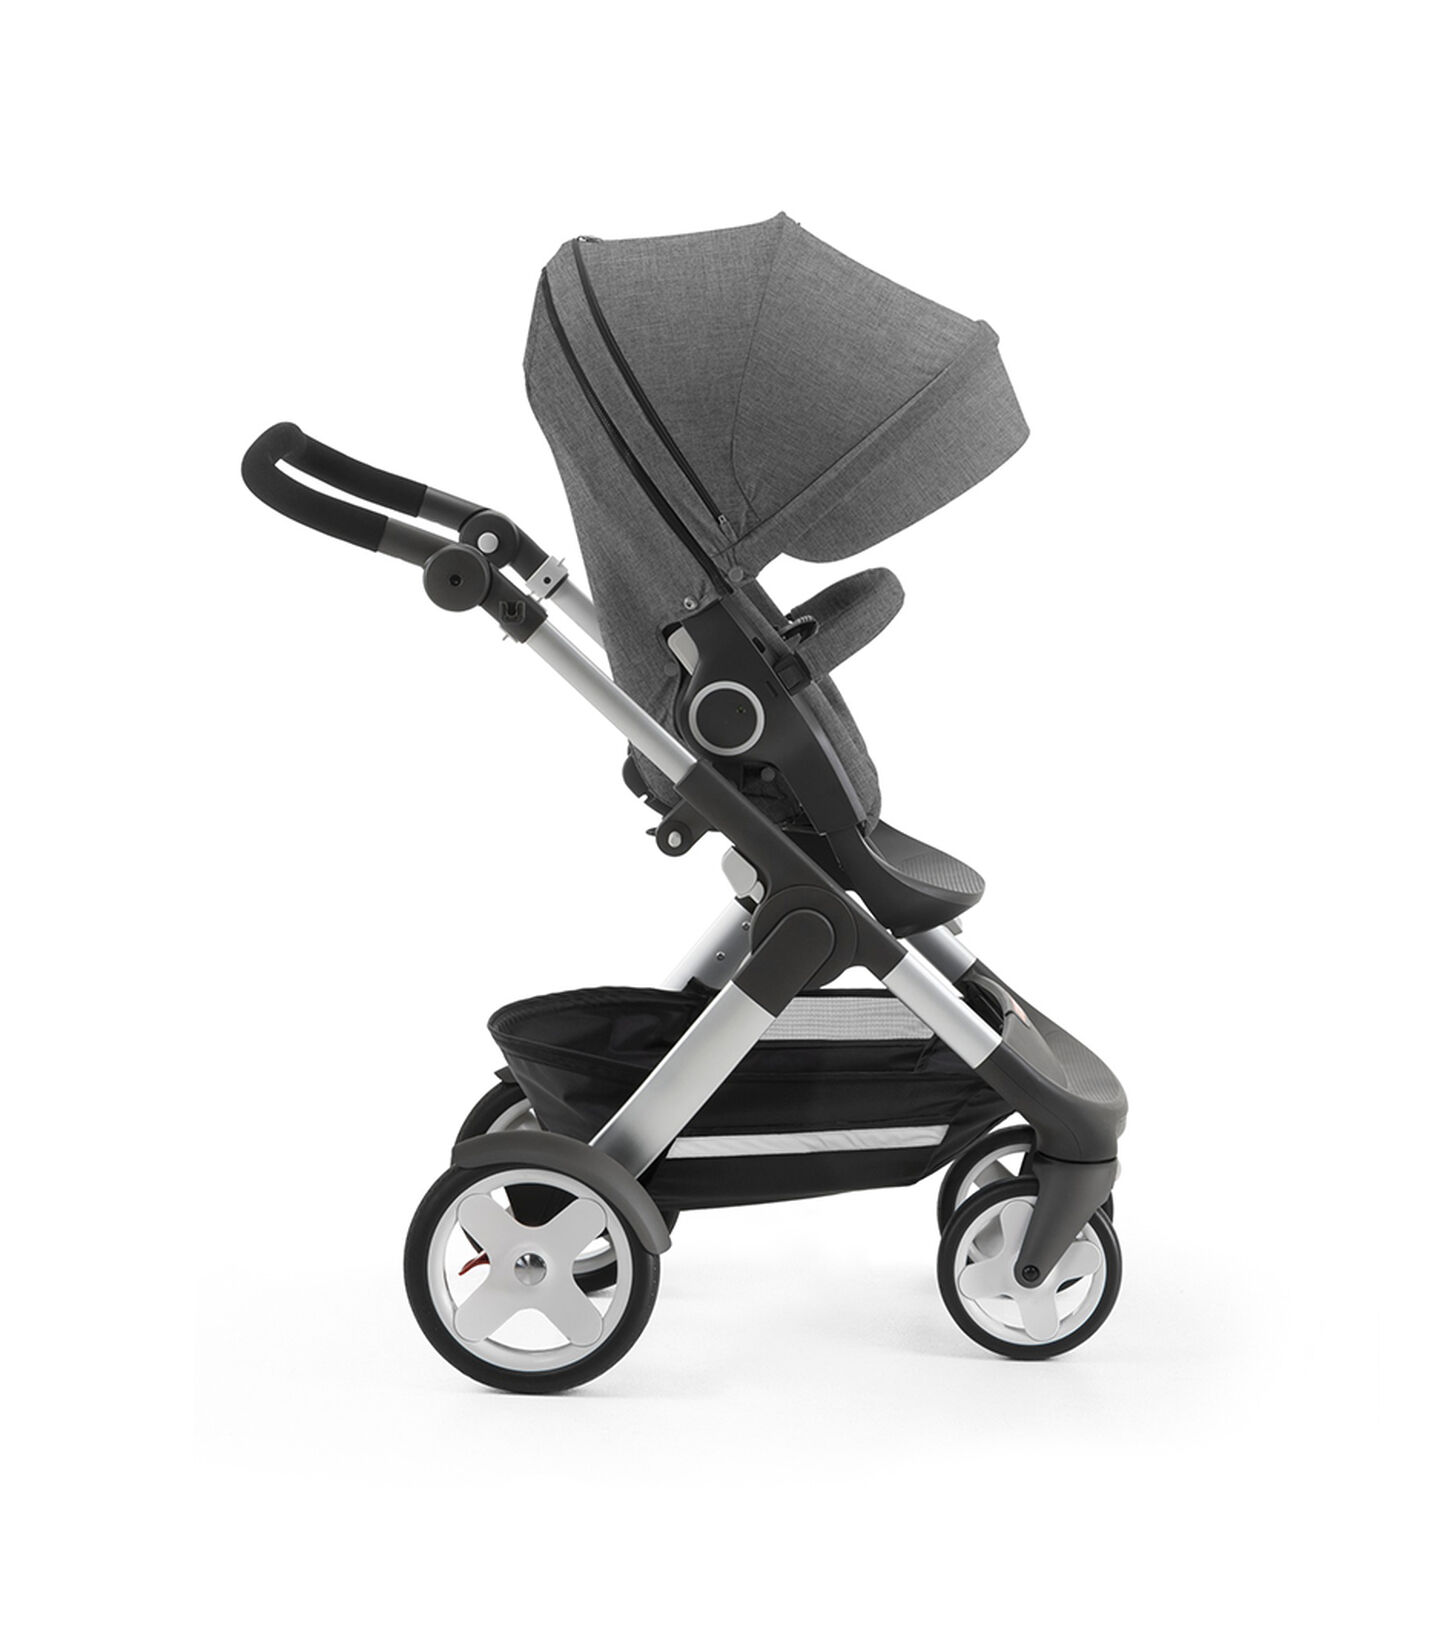 Stokke® Trailz with Stokke® Stroller Seat, forward facing, active position. Black Melange. view 5